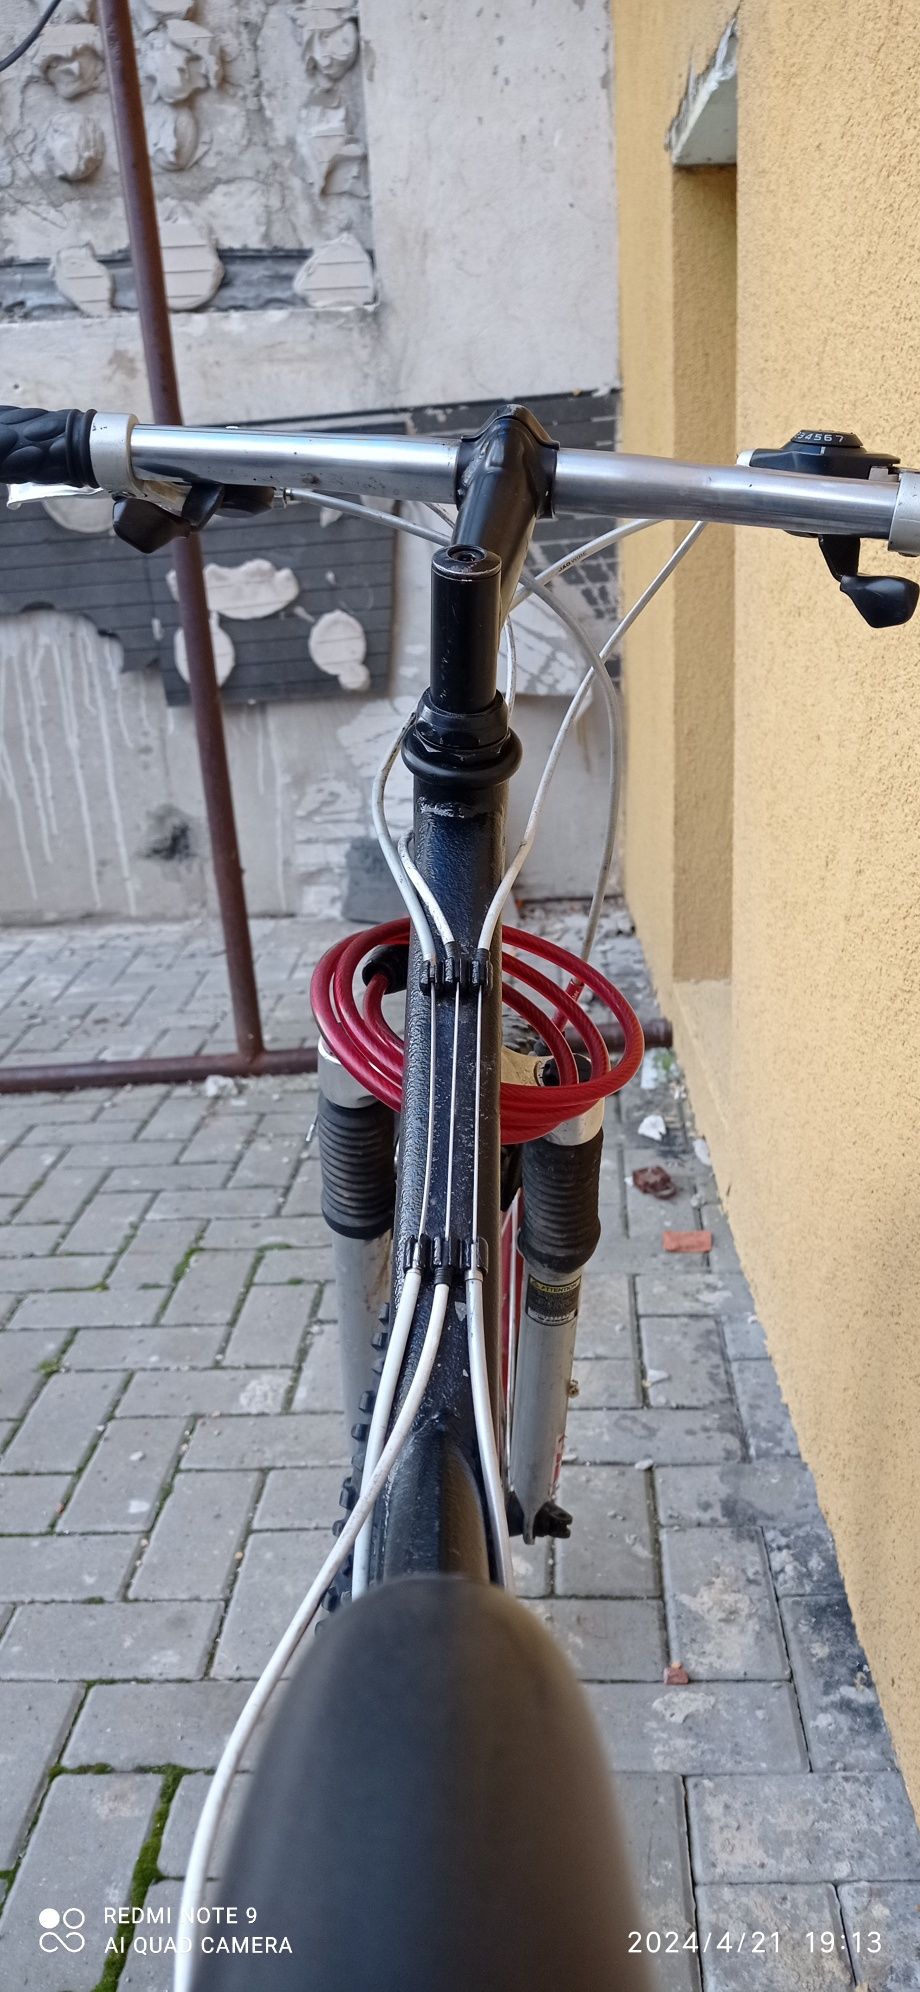 Bicicleta MTB full suspension